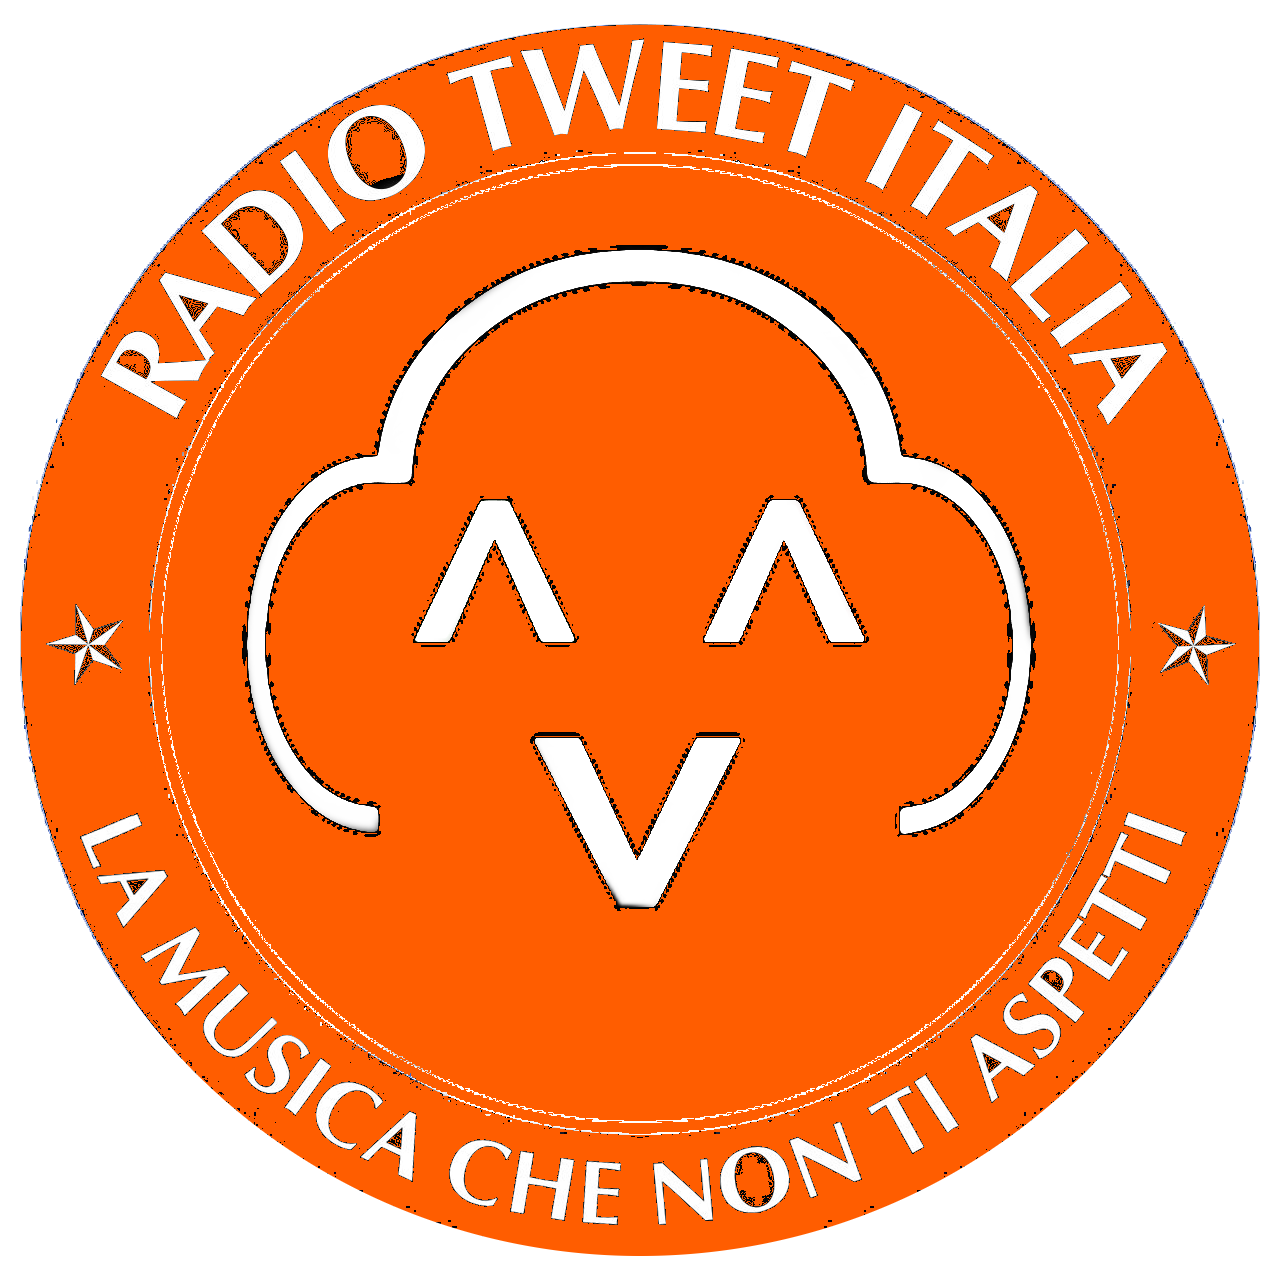 Radio Tweet Italia